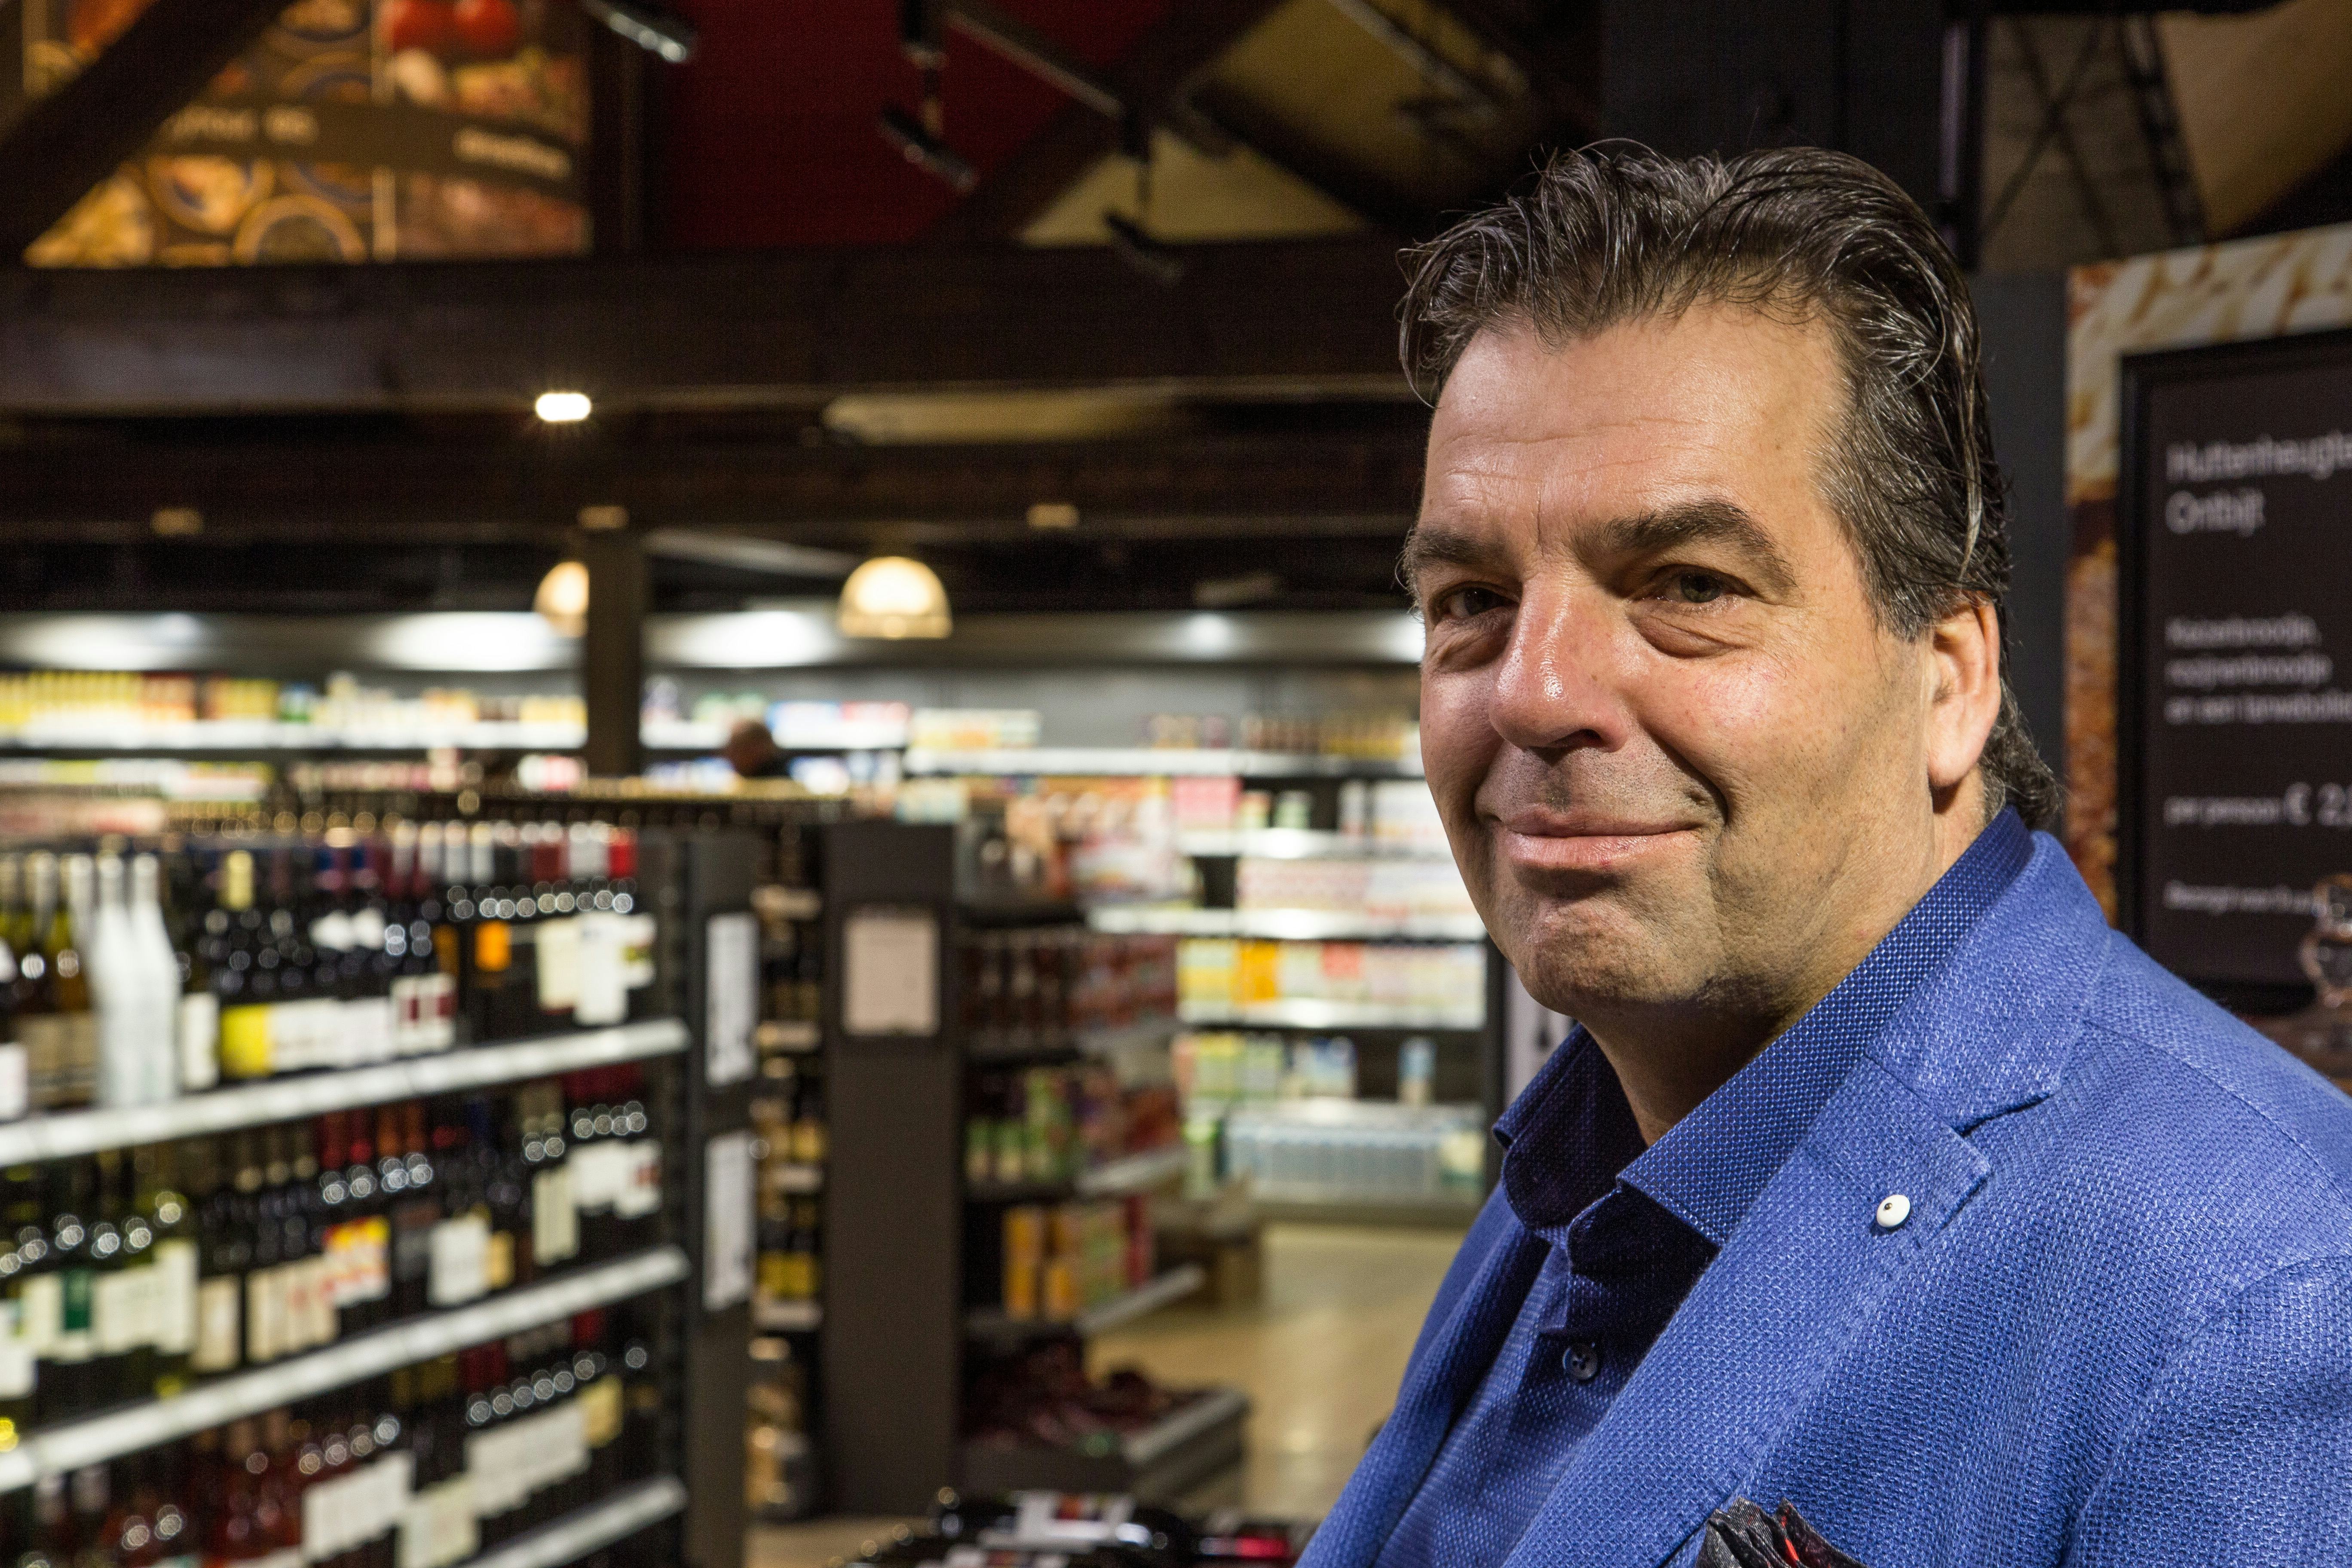 Theo Kalkdijk heeft de formule Deli Food Store zelf ontwikkeld en ook deze nieuwste winkel vrijwel volledig zelf getekend.
Foto's : Jan Willem van Vliet